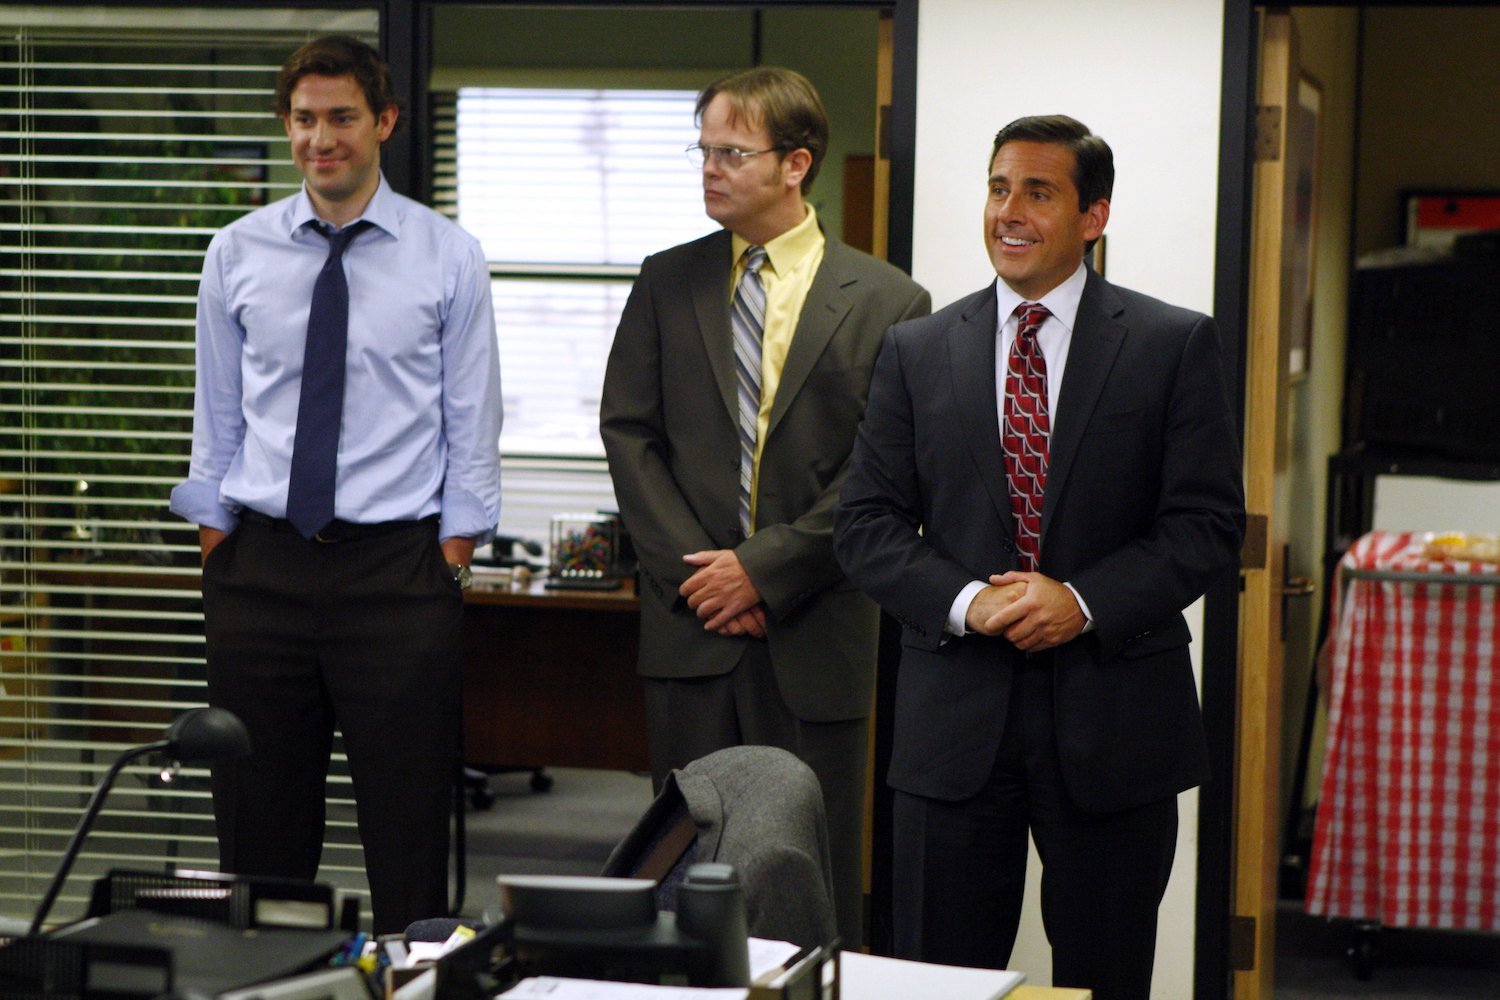 'The Office' stars: John Krasinski, Rainn Wilson, and Steve Carell